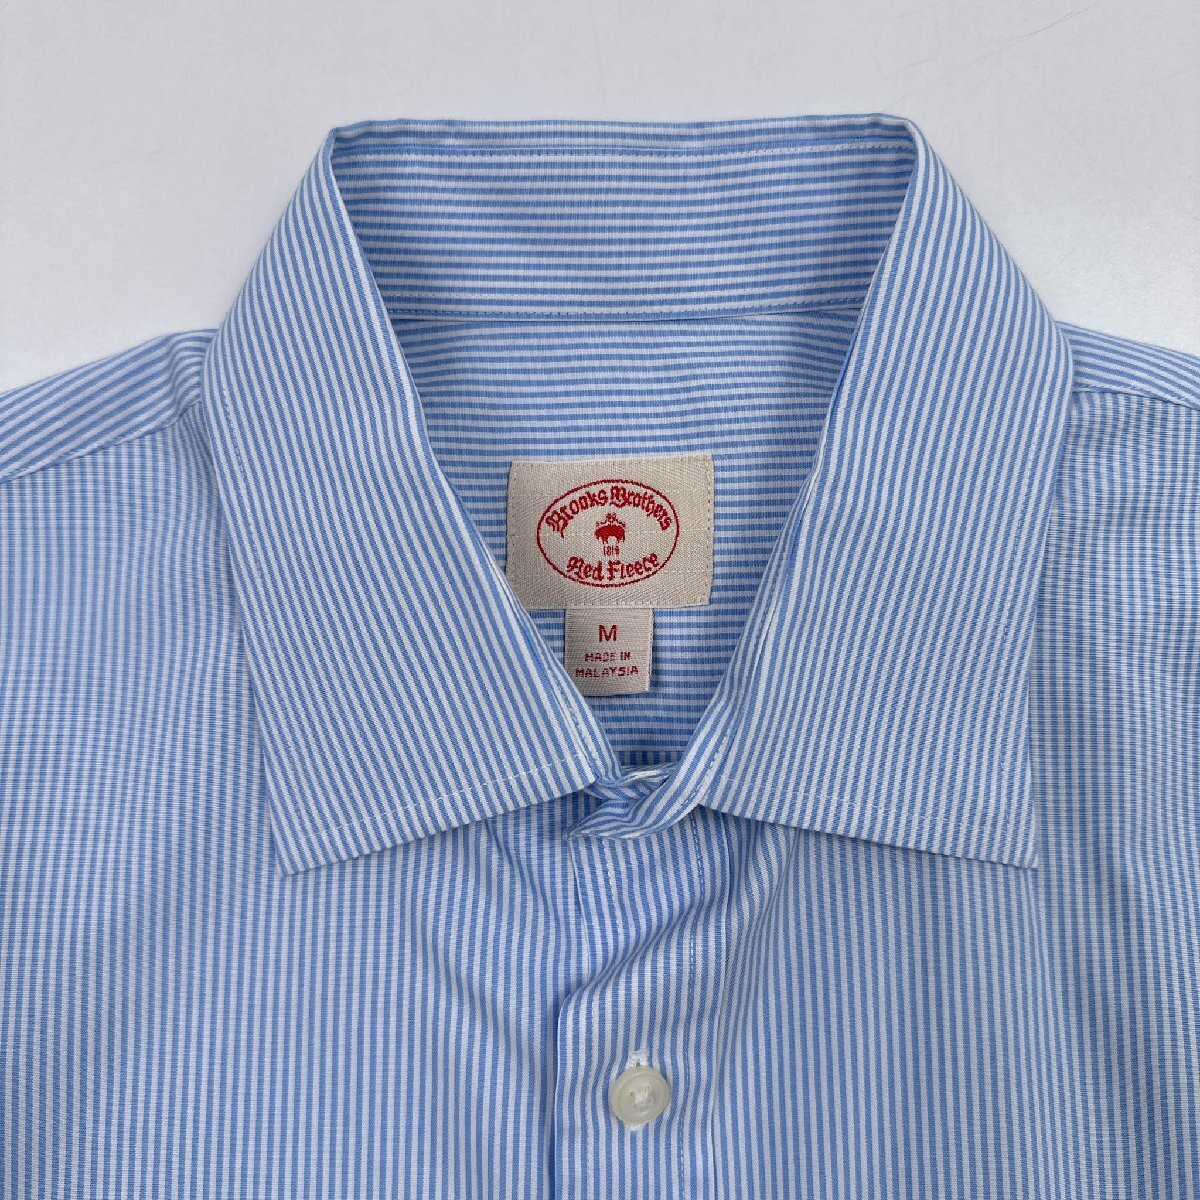 BrooksBrothers Red Fleece ブルックスブラザーズ ストライプ柄 長袖 シャツ ワイシャツ Mサイズ/ブルー×ホワイト/メンズ_画像4